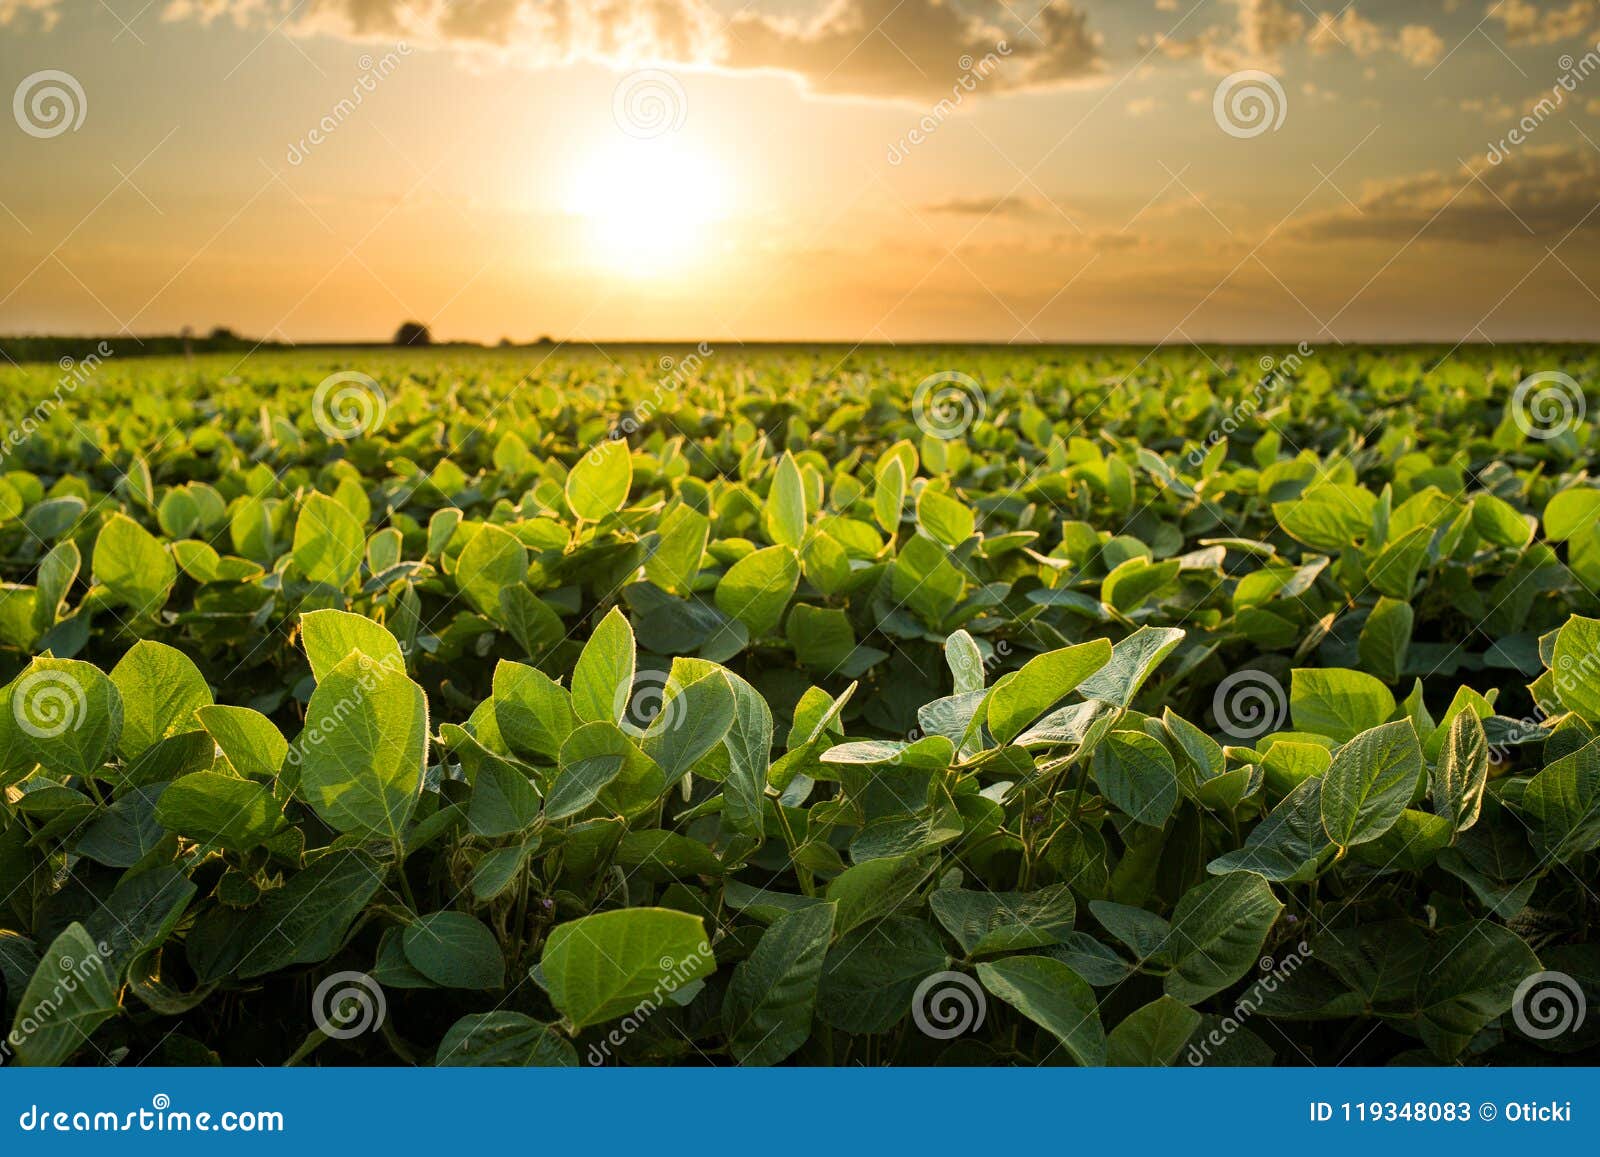 green ripening soybean field